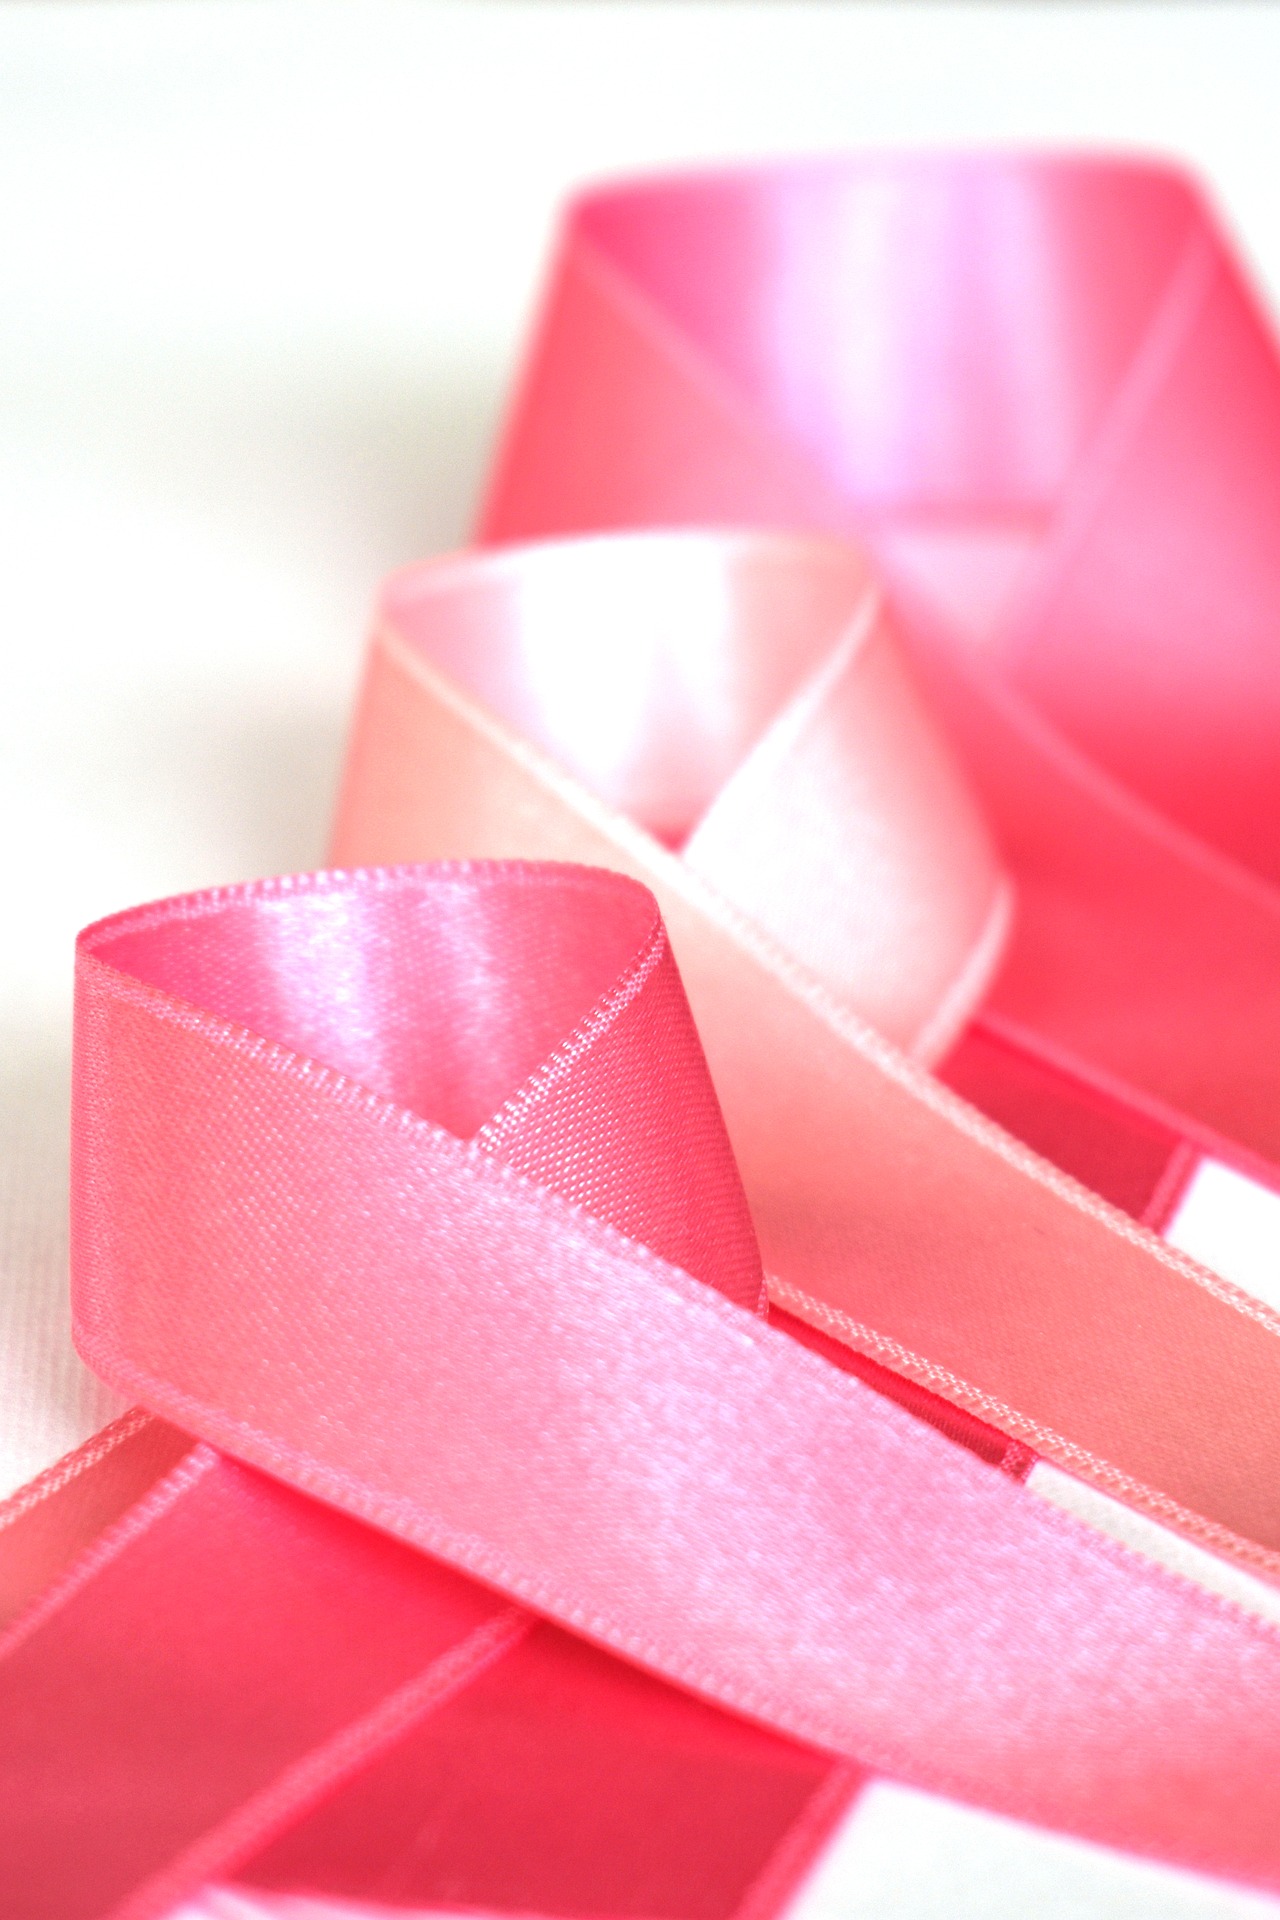 Rosene Krebsschleifen zum Thema: Brustkrebs: Oktober ist Awareness Month